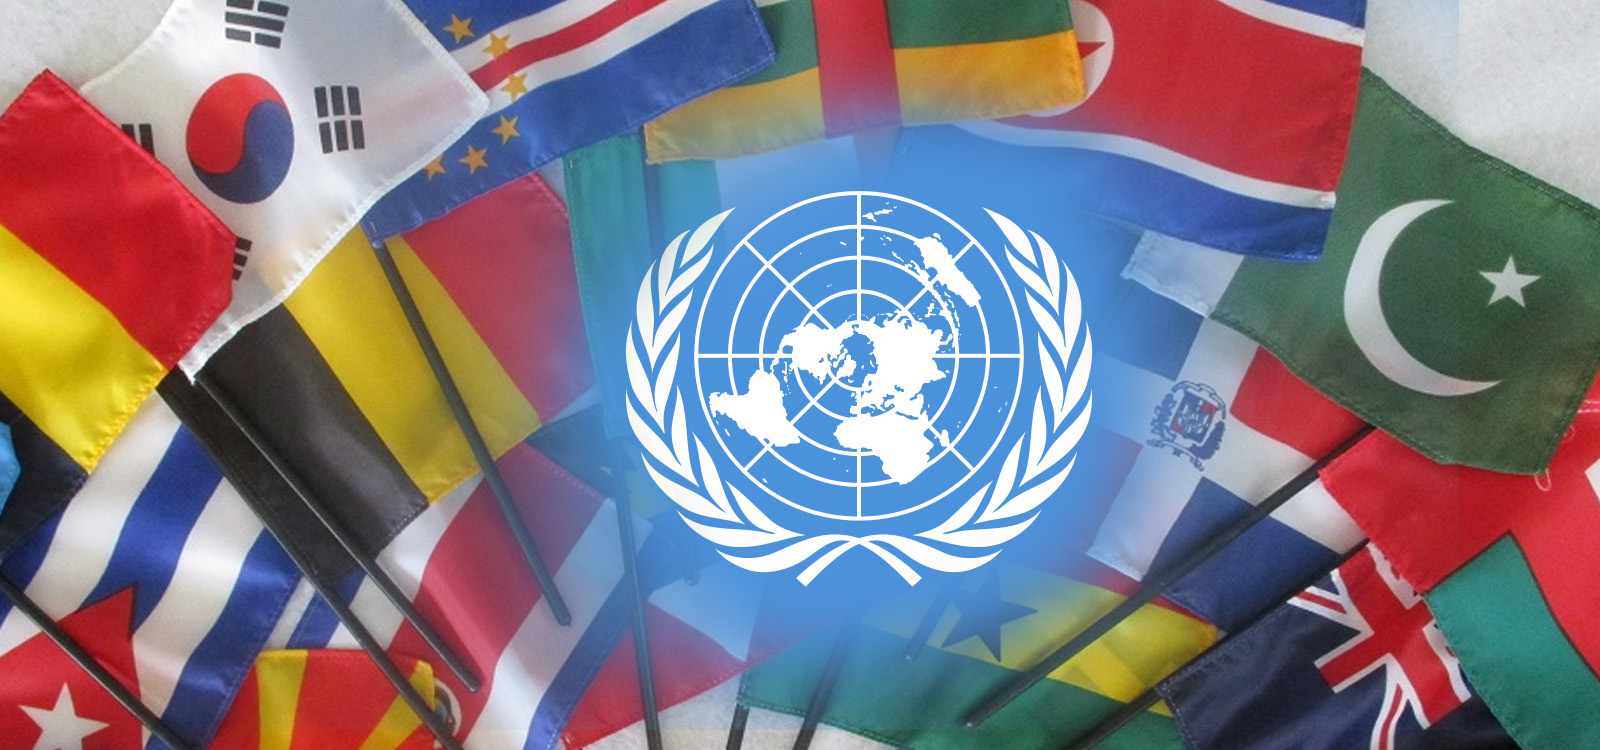 Членство оон. Флаги государств входящих в ООН. Международные организации ООН. 193 Государства в ООН.